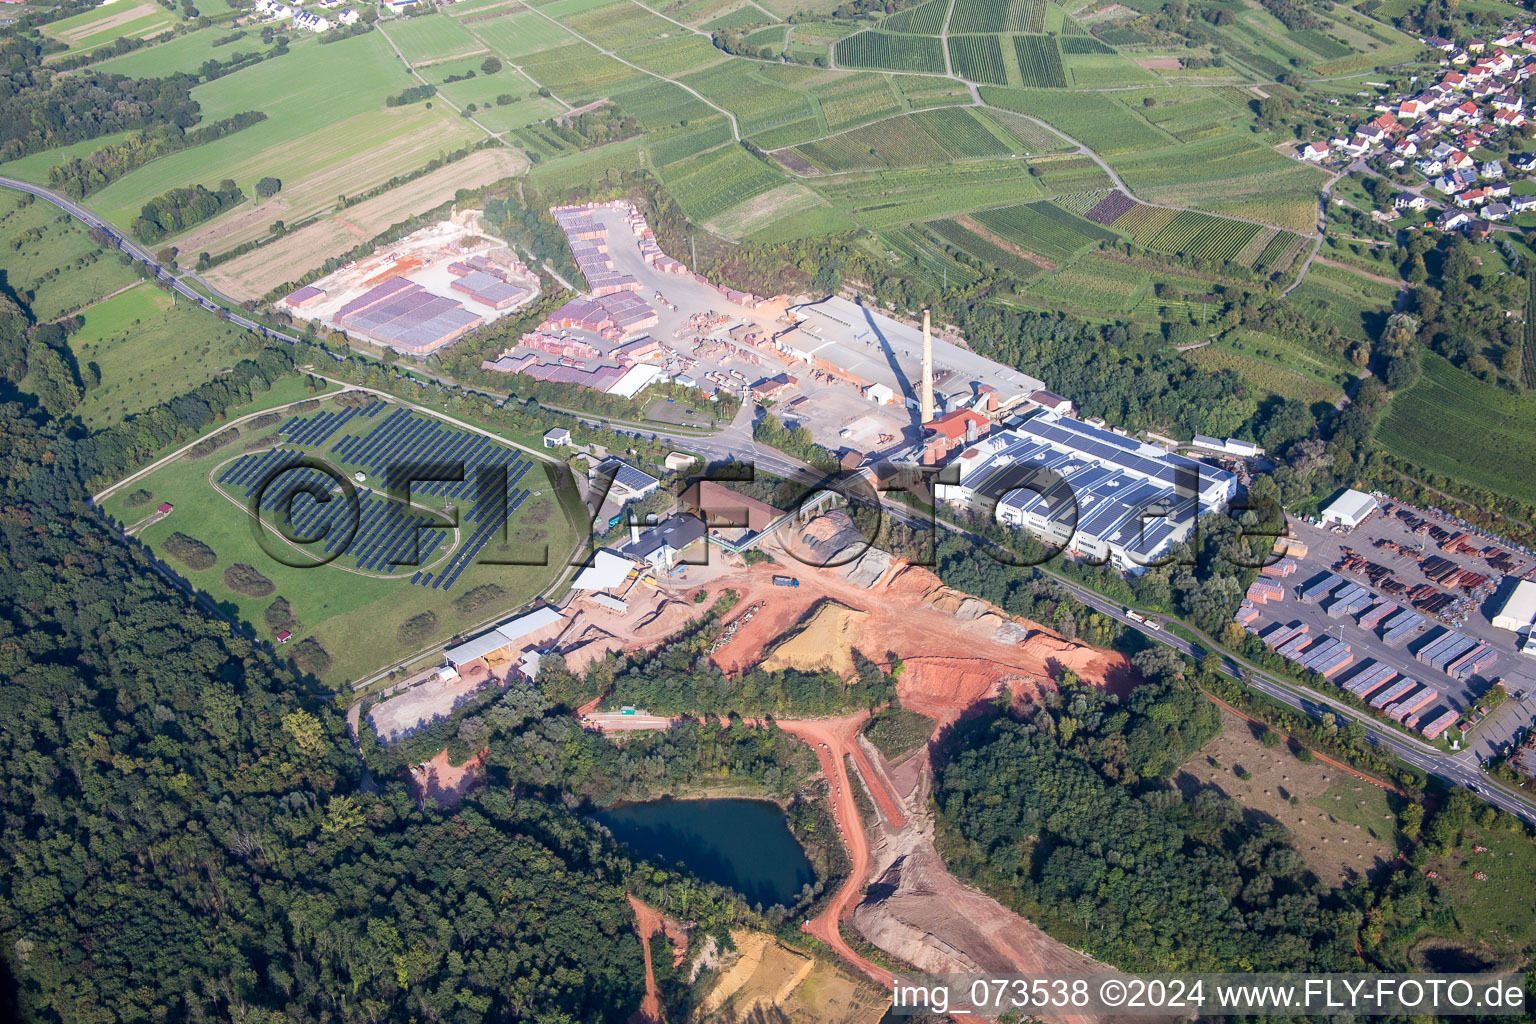 Vue aérienne de Usine de briques et centre logistique de Wienerberger GmbH, usine Malsch et Creaton Aktiengesellschaft à Malsch dans le département Bade-Wurtemberg, Allemagne